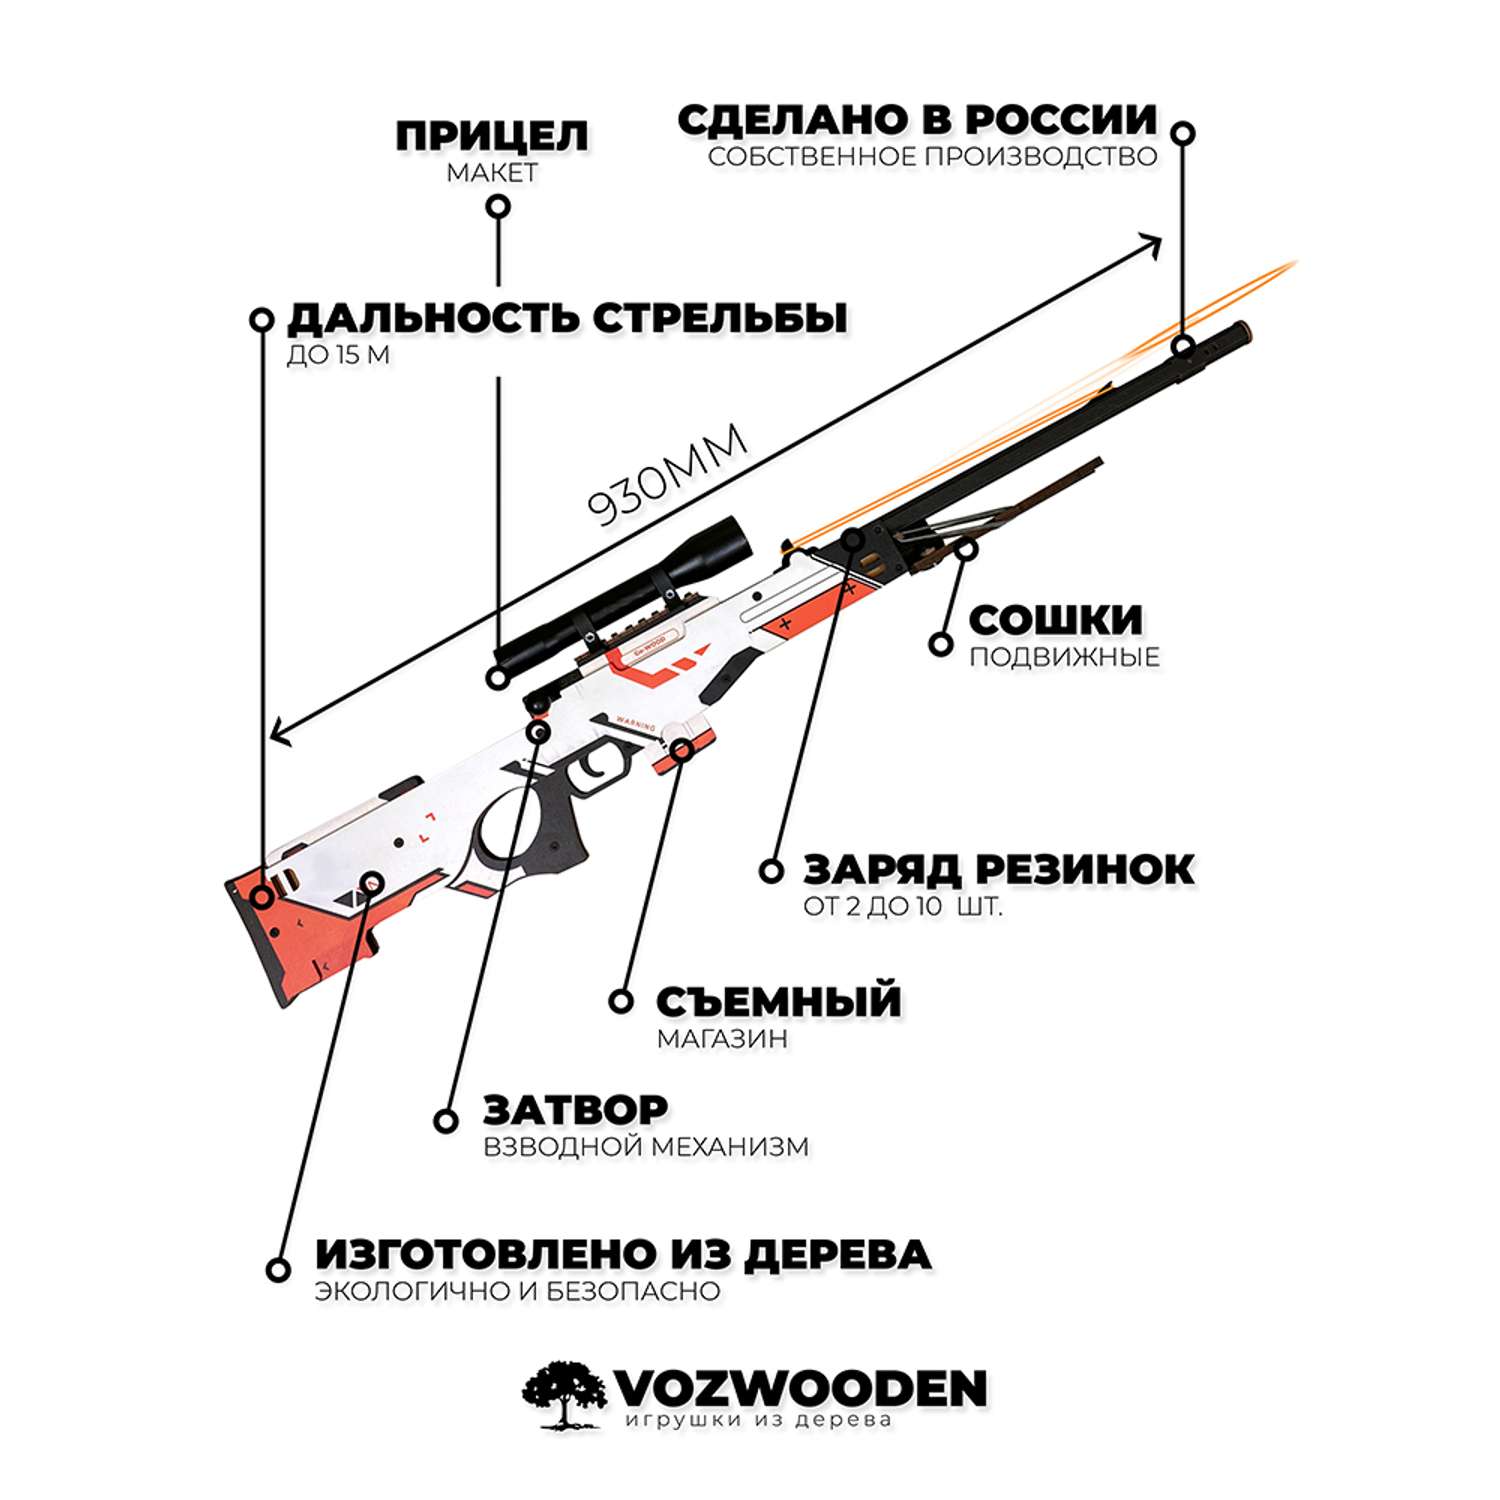 Снайперская винтовка Go-Wood AWP версия 1.6 Азимов деревянный резинкострел - фото 2